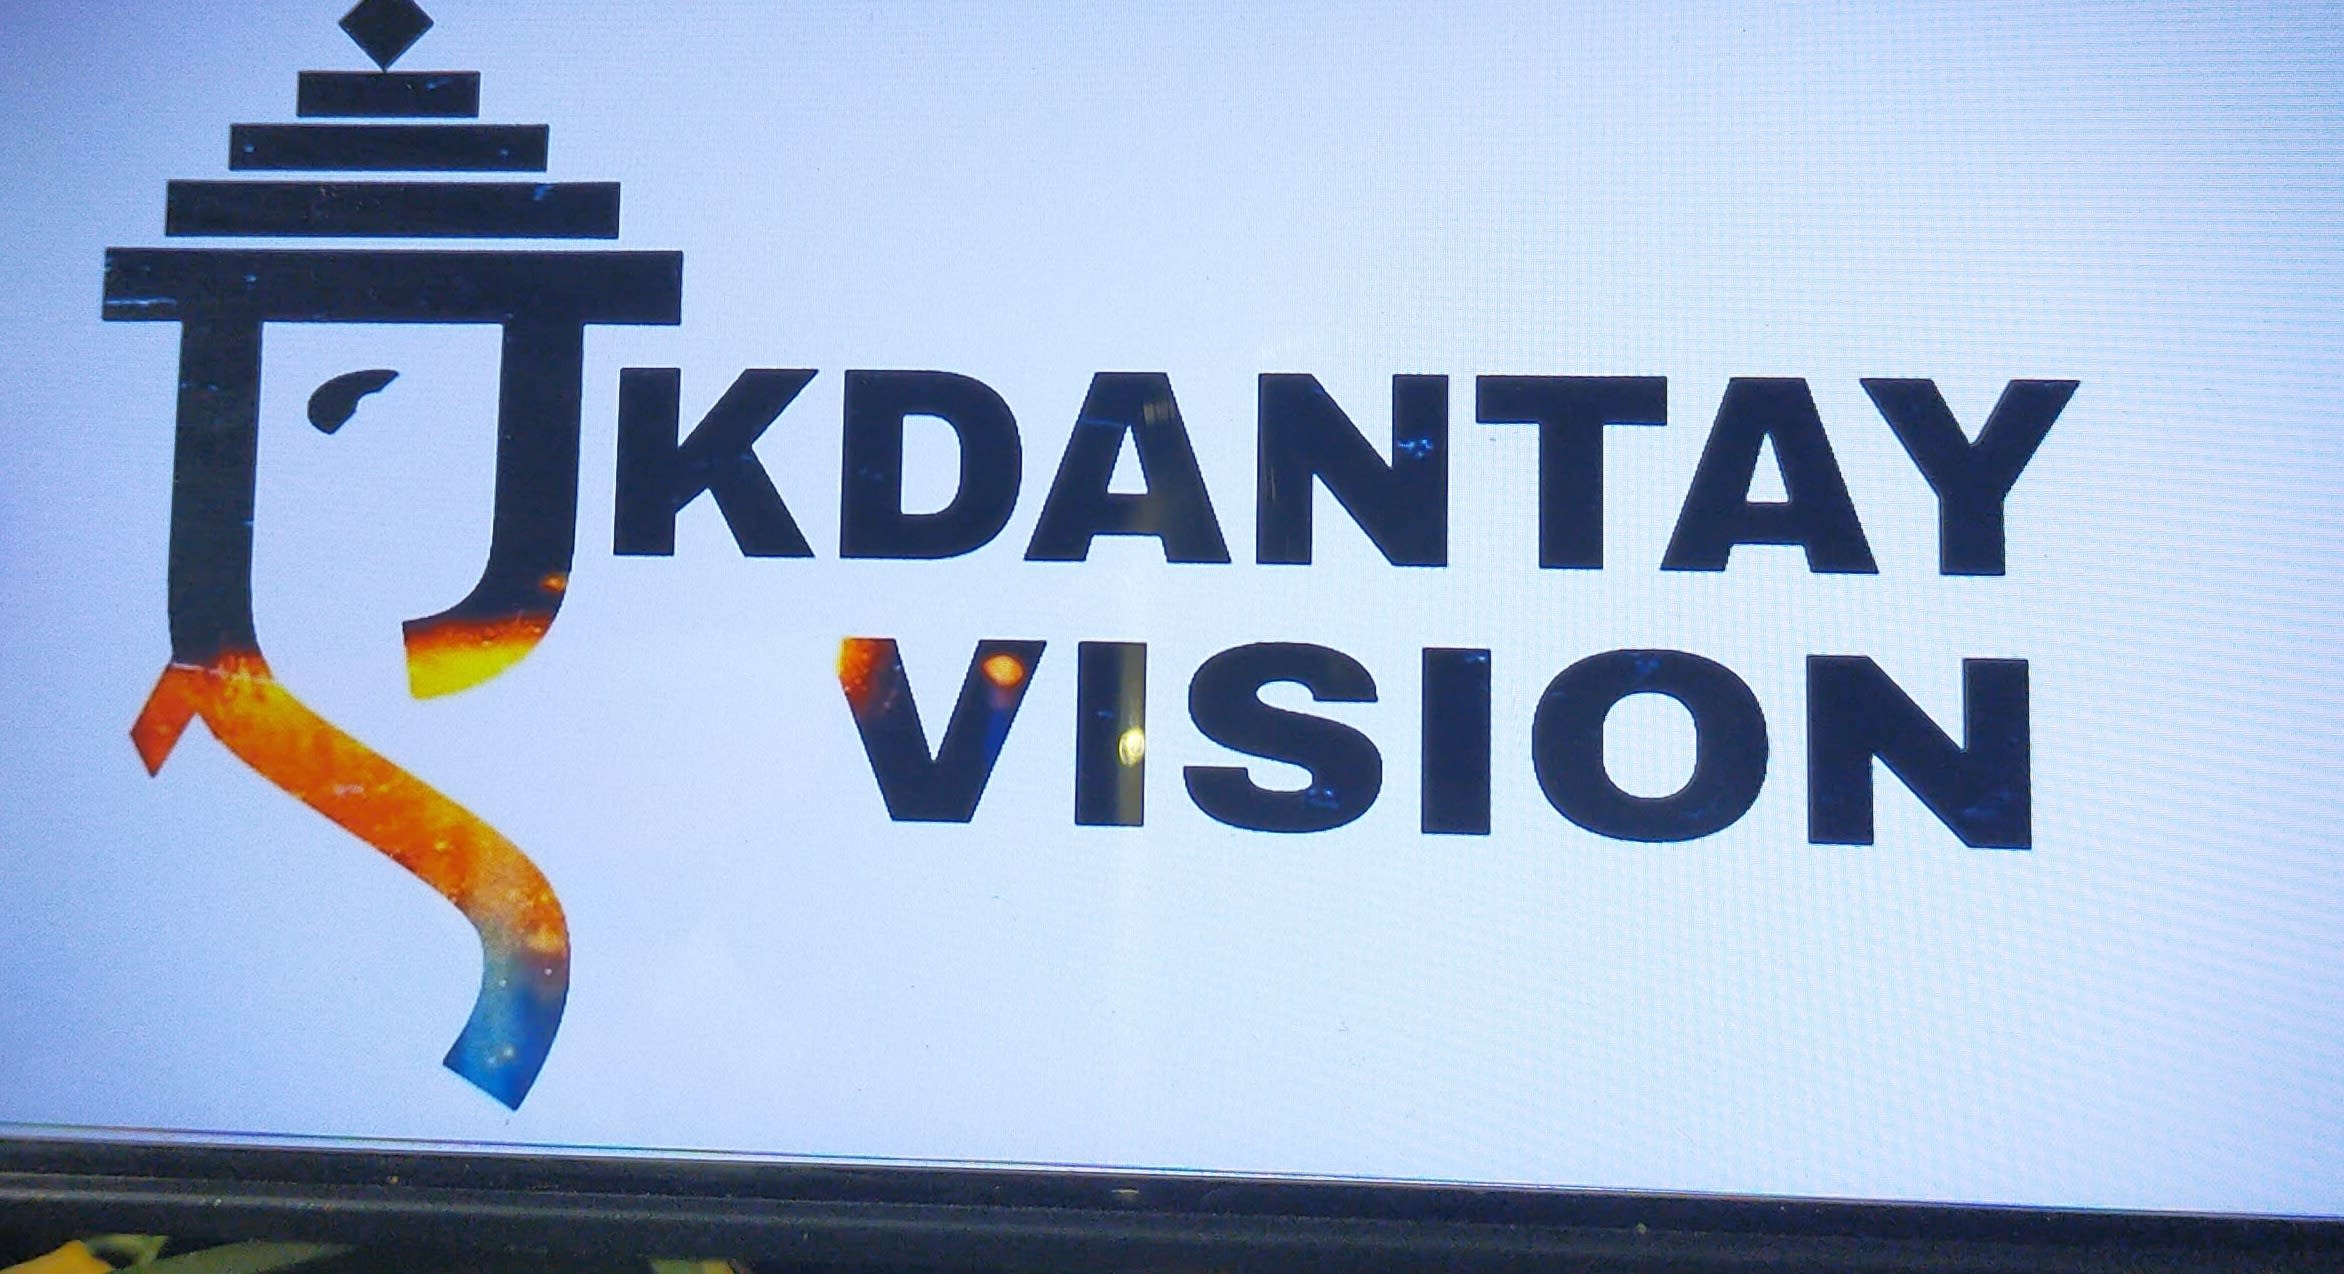 Ekdantay Vision